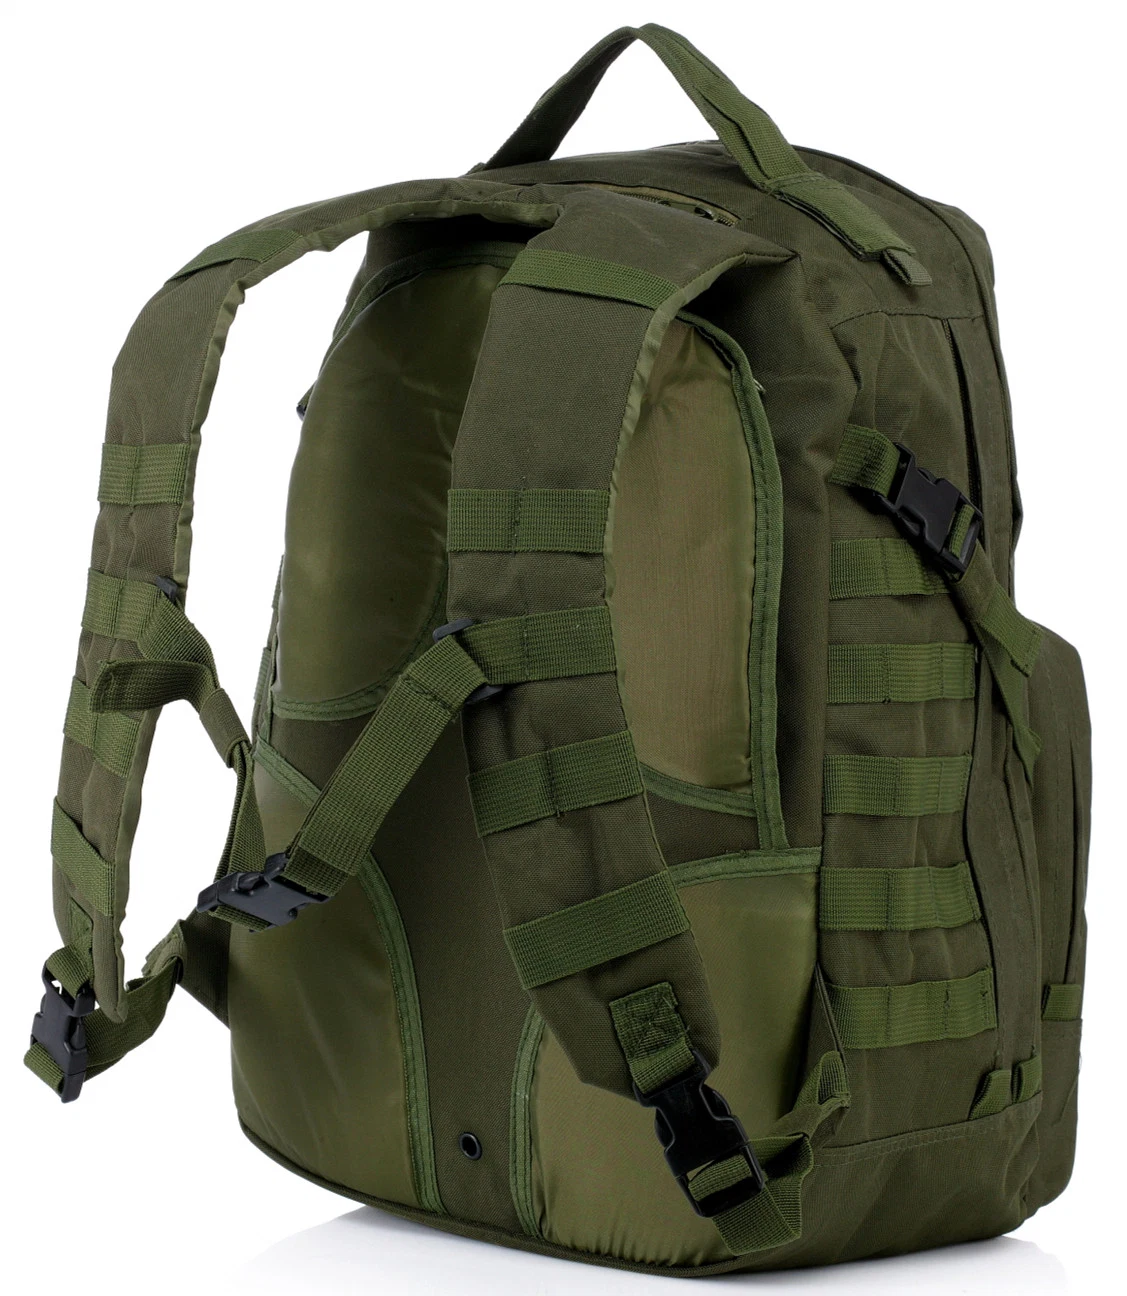 Esdy Backpacks sacs à dos pour randonnée en plein air Camping randonnée chasse